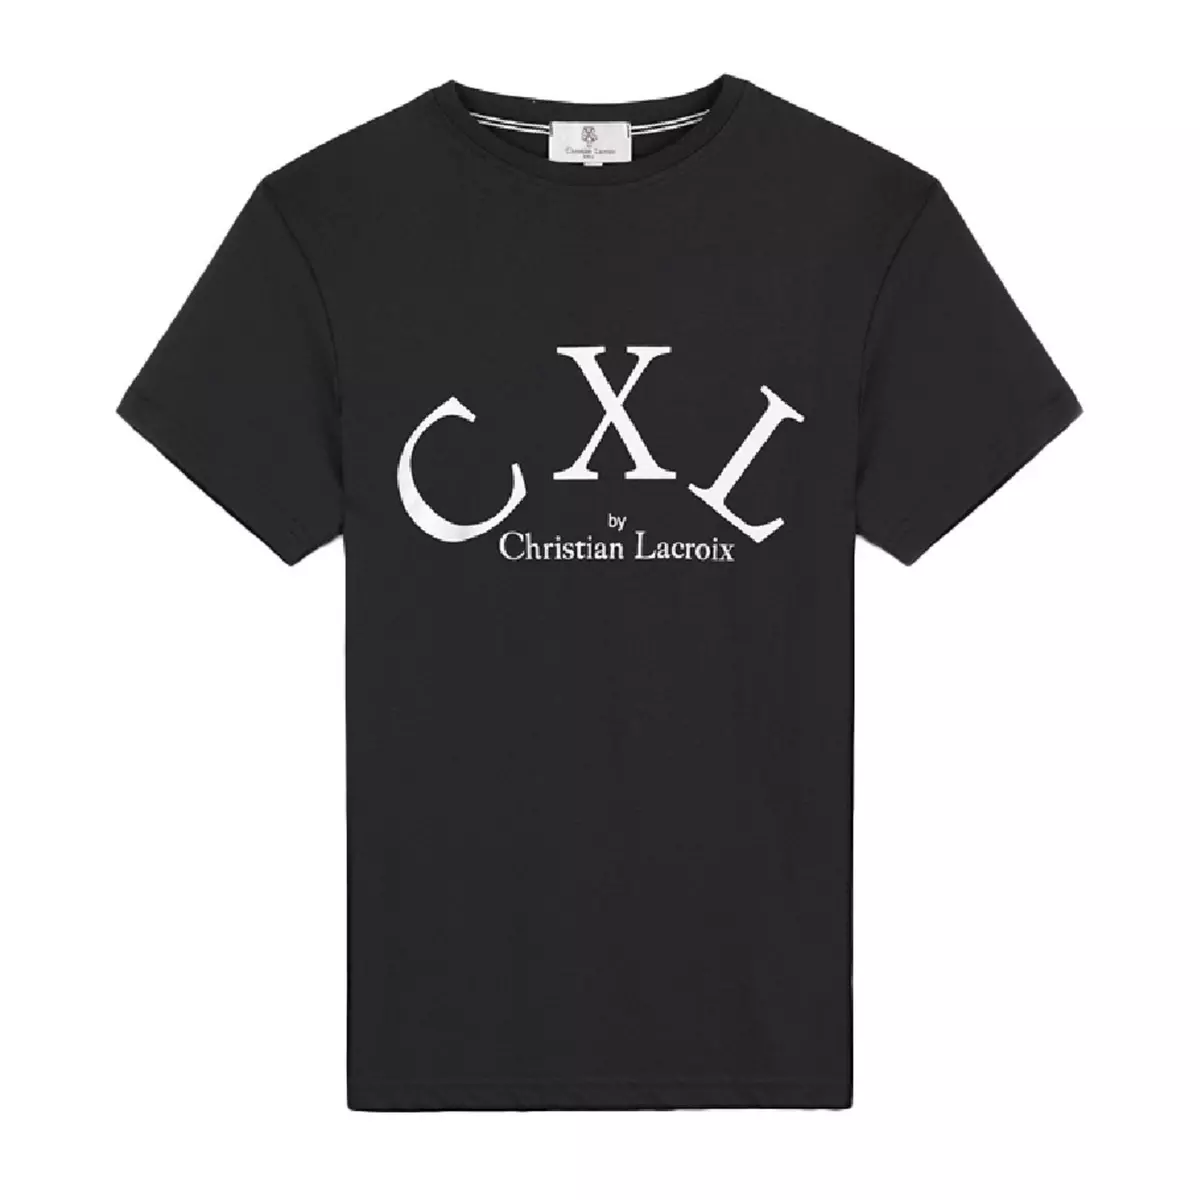  T-shirt Noir Garçon CXL by Christian Lacroix Marc